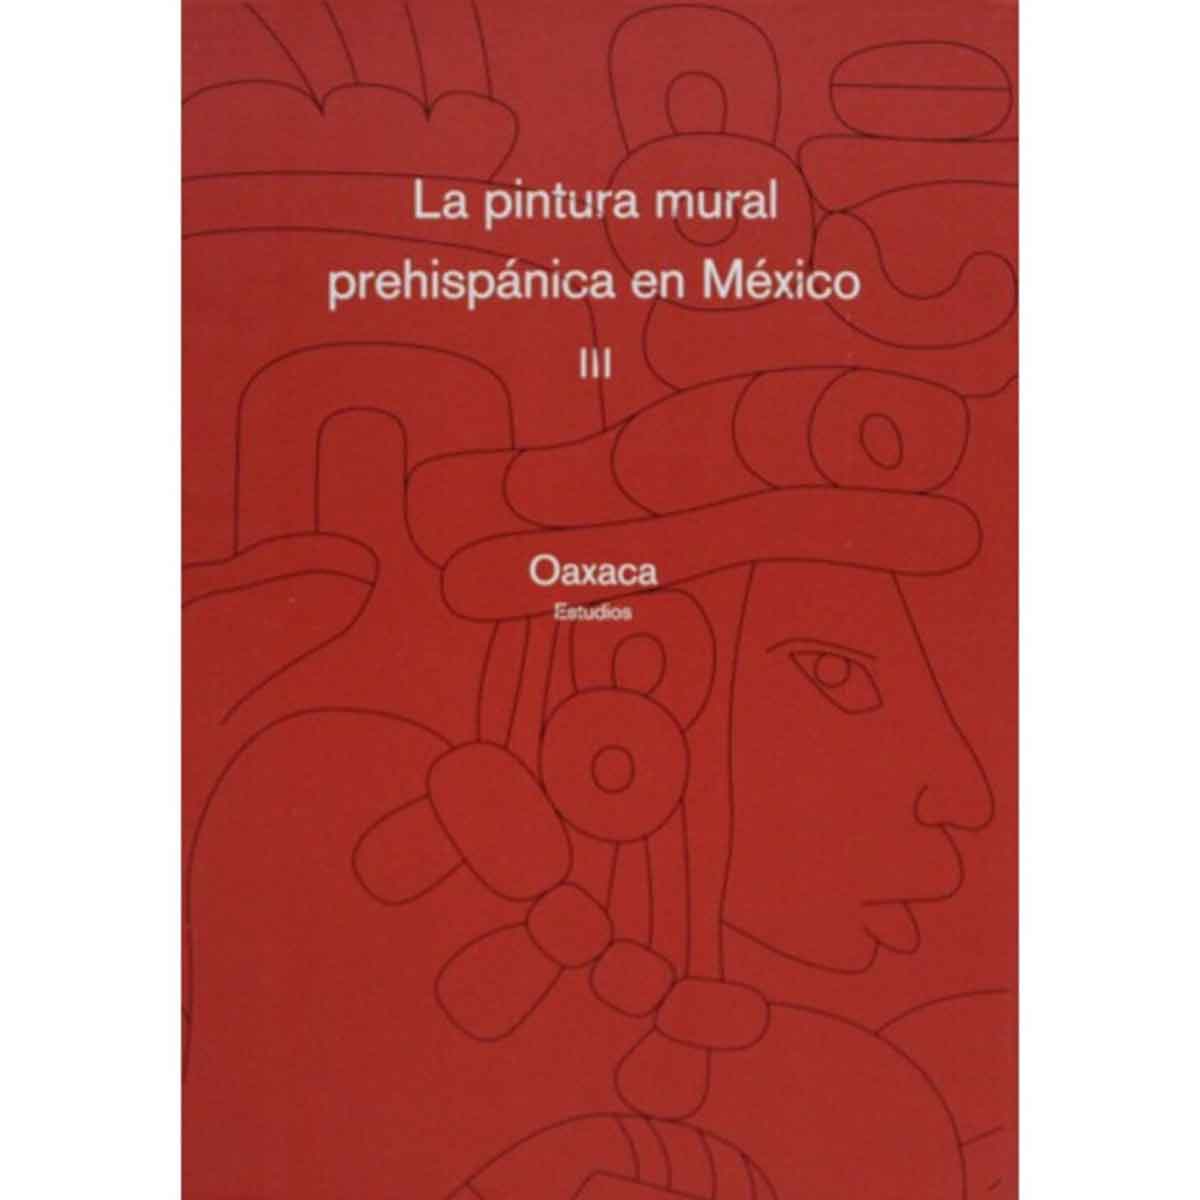 LA PINTURA MURAL PREHISPÁNICA EN MÉXICO III. OAXACA. TOMOS III Y IV. ESTUDIOS